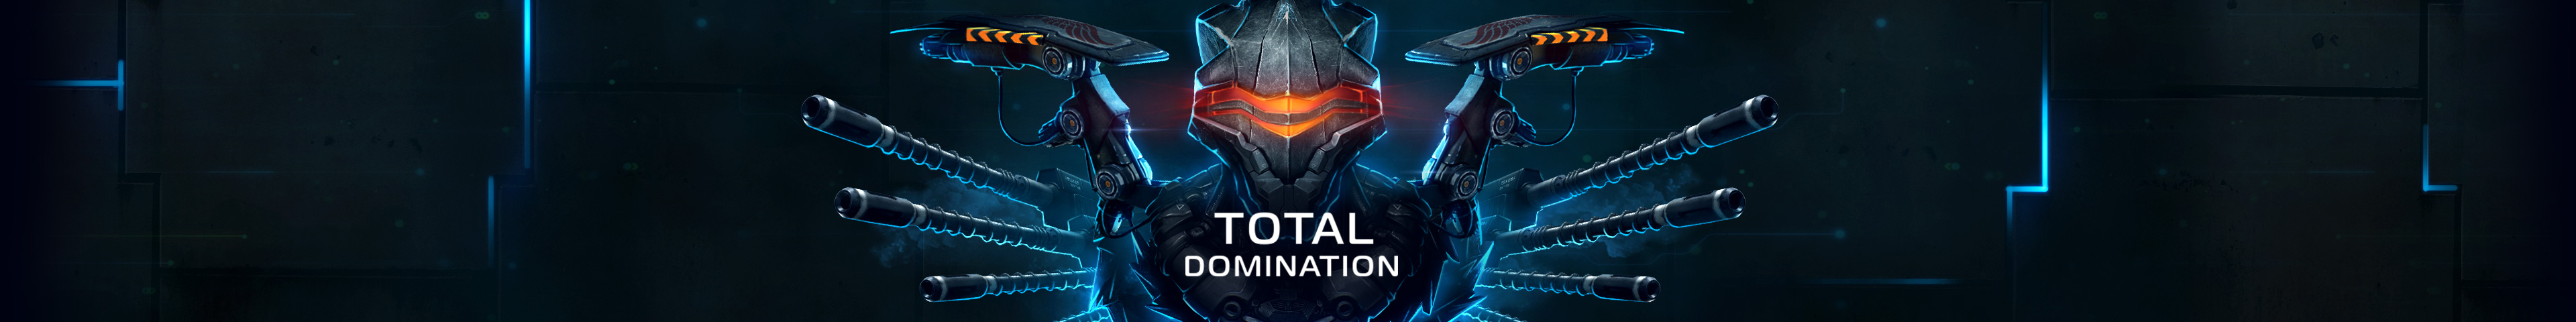 Total Domination - RU